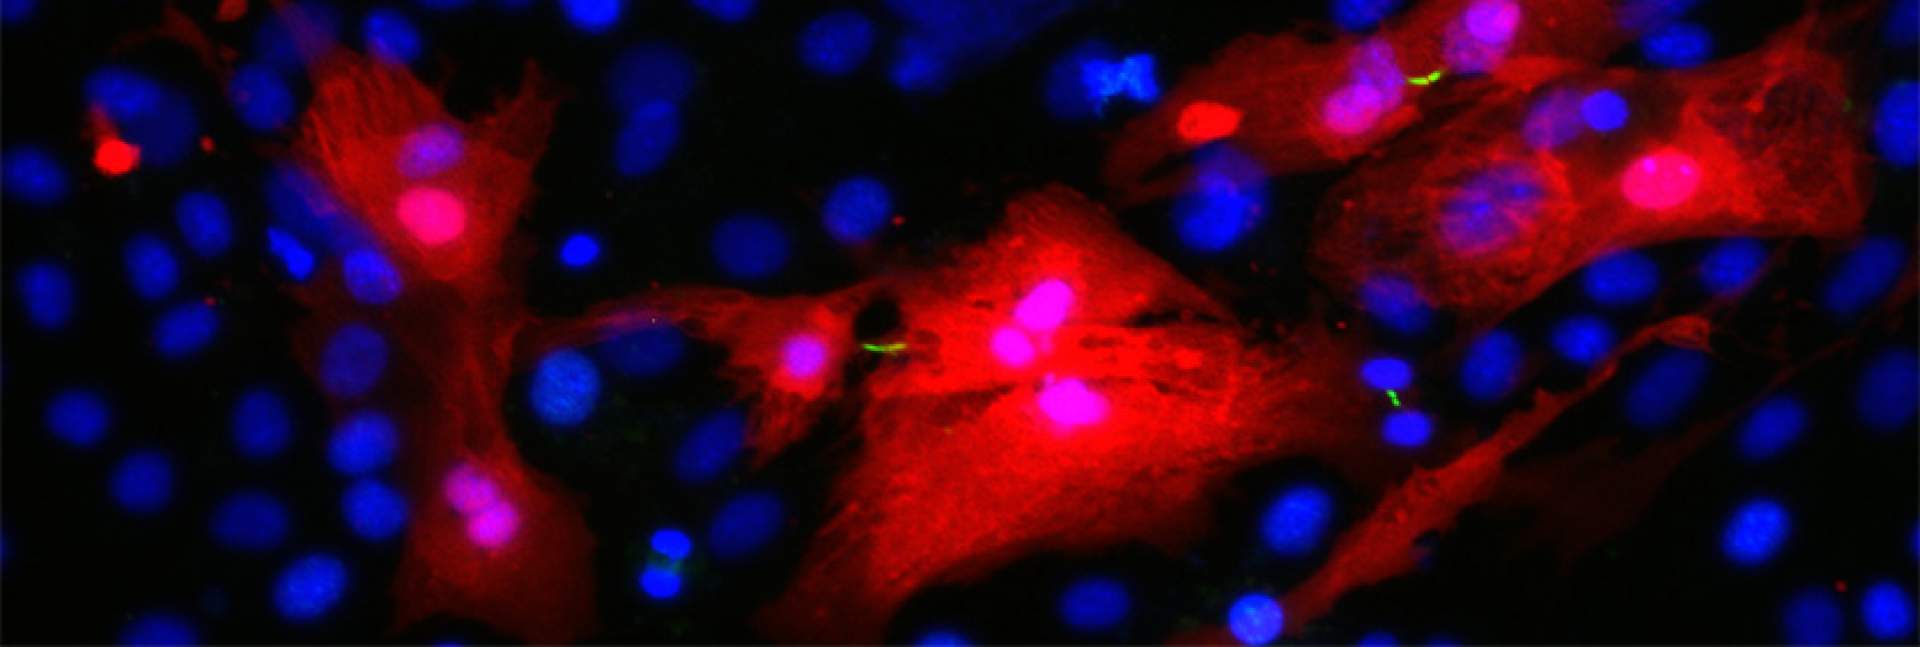 התחדשות רקמת לב תחת המיקרוסקופ. בתמונה ניתן להבחין בפסים דקים ירוקים המסמנים את חריצי ההתלמה (cleavage furrows) הנוצרים בין תאי שריר הלב (באדום) המתחלקים